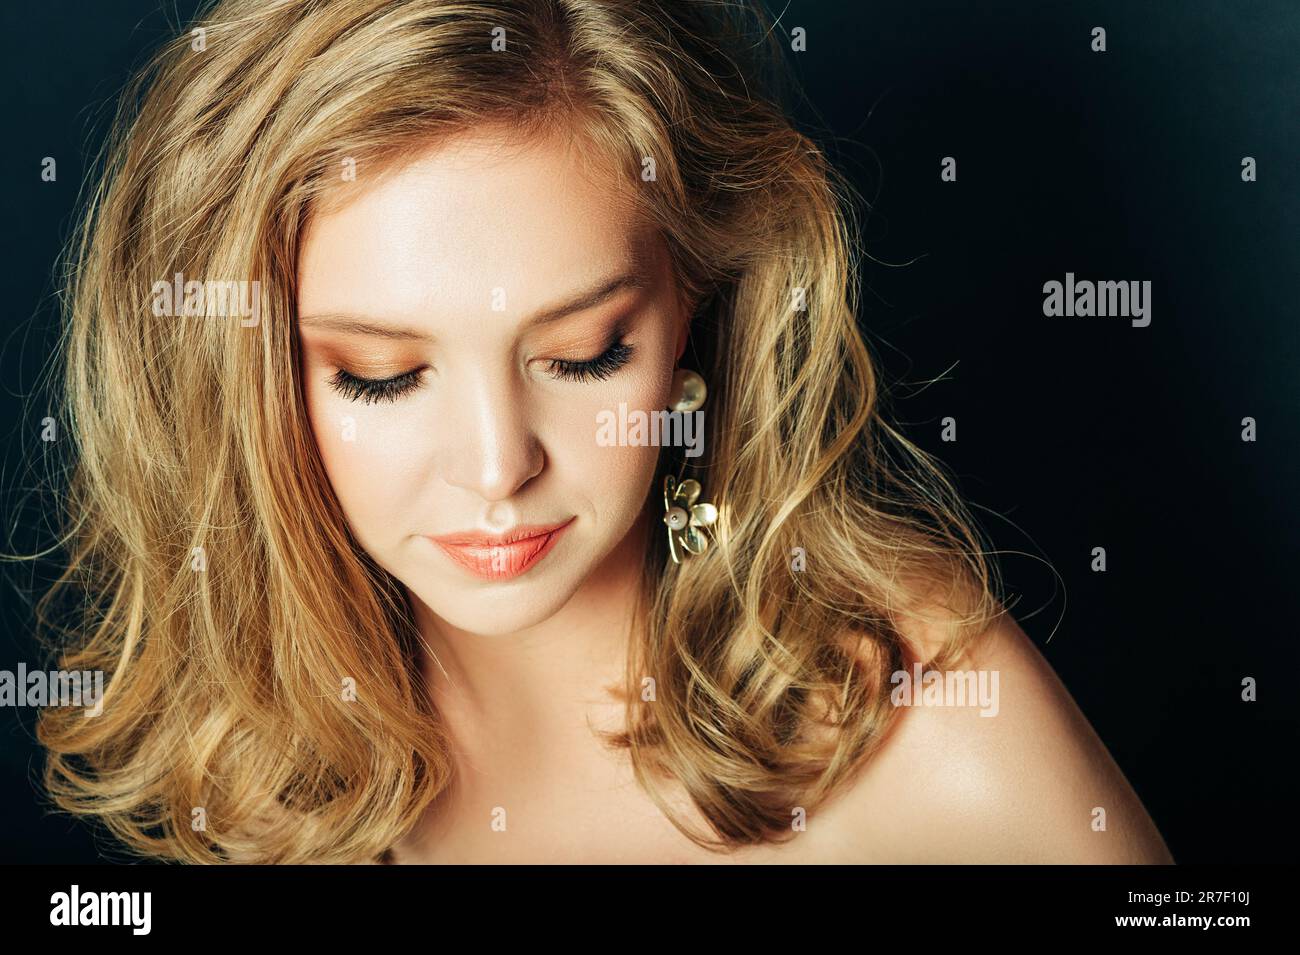 Primo piano ritratto di bella giovane donna con capelli biondi e make up professionale, posa su sfondo nero, guardando verso il basso Foto Stock